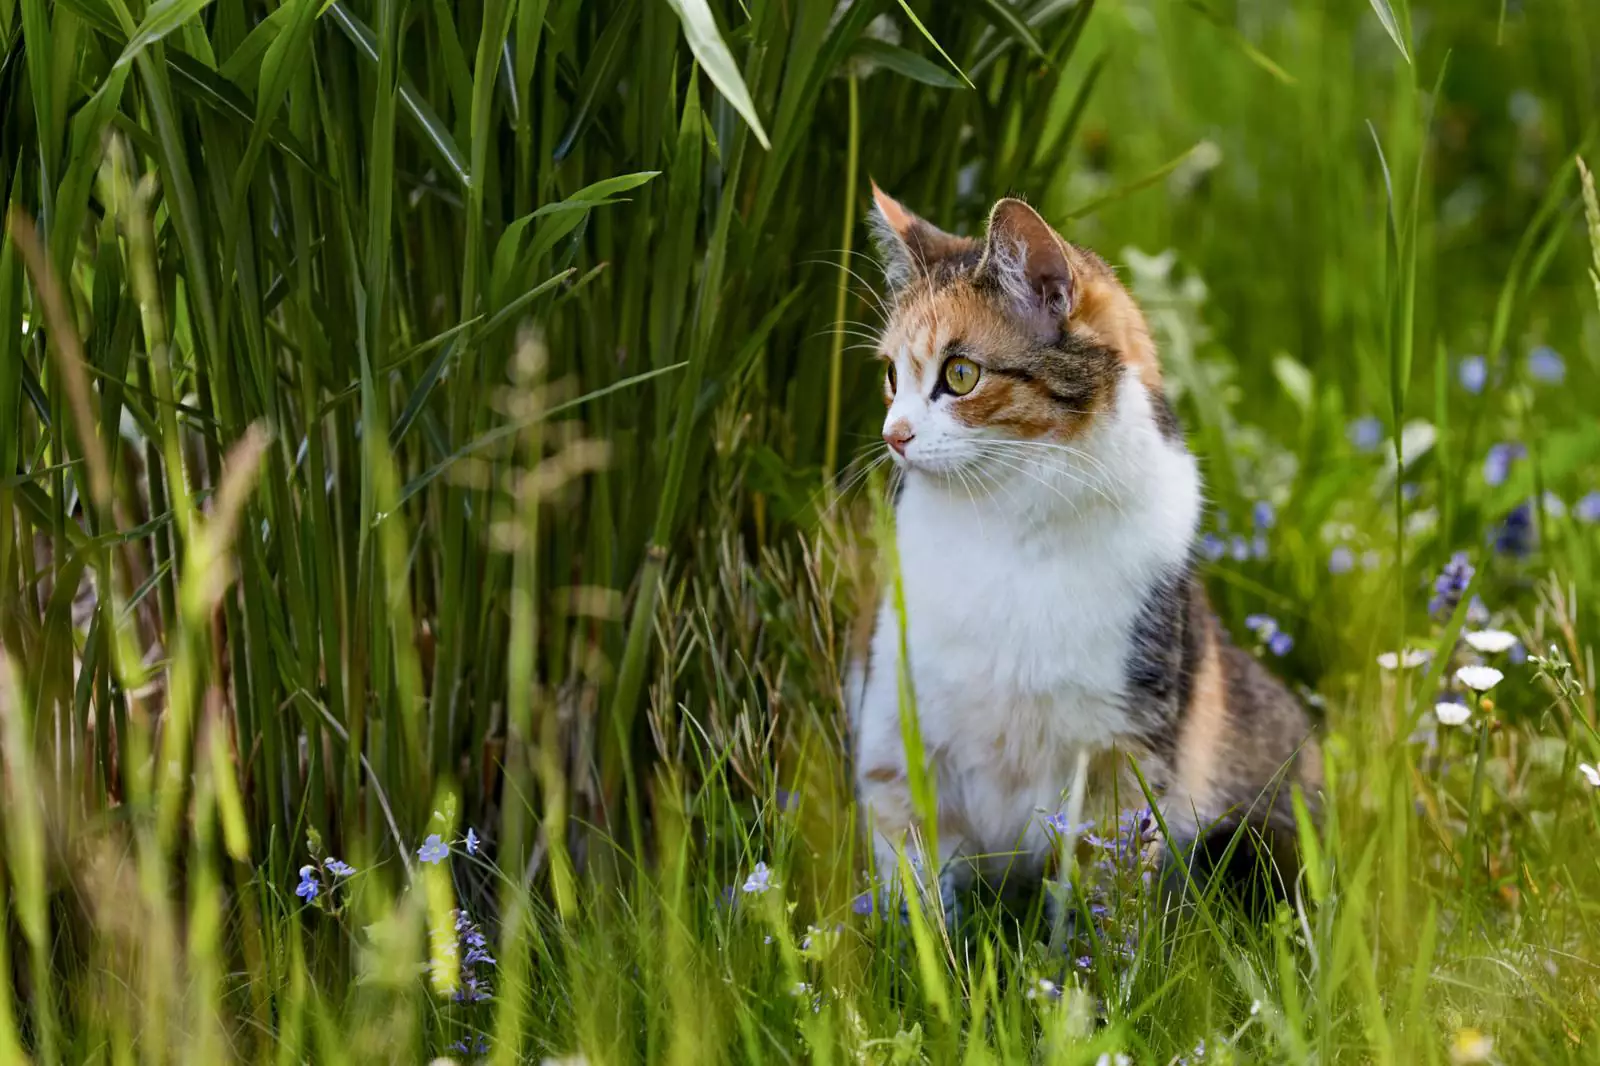 Устройте коту живой уголок с настоящей травой и безопасными растениями, которые он сможет грызть в свое удовольствие.